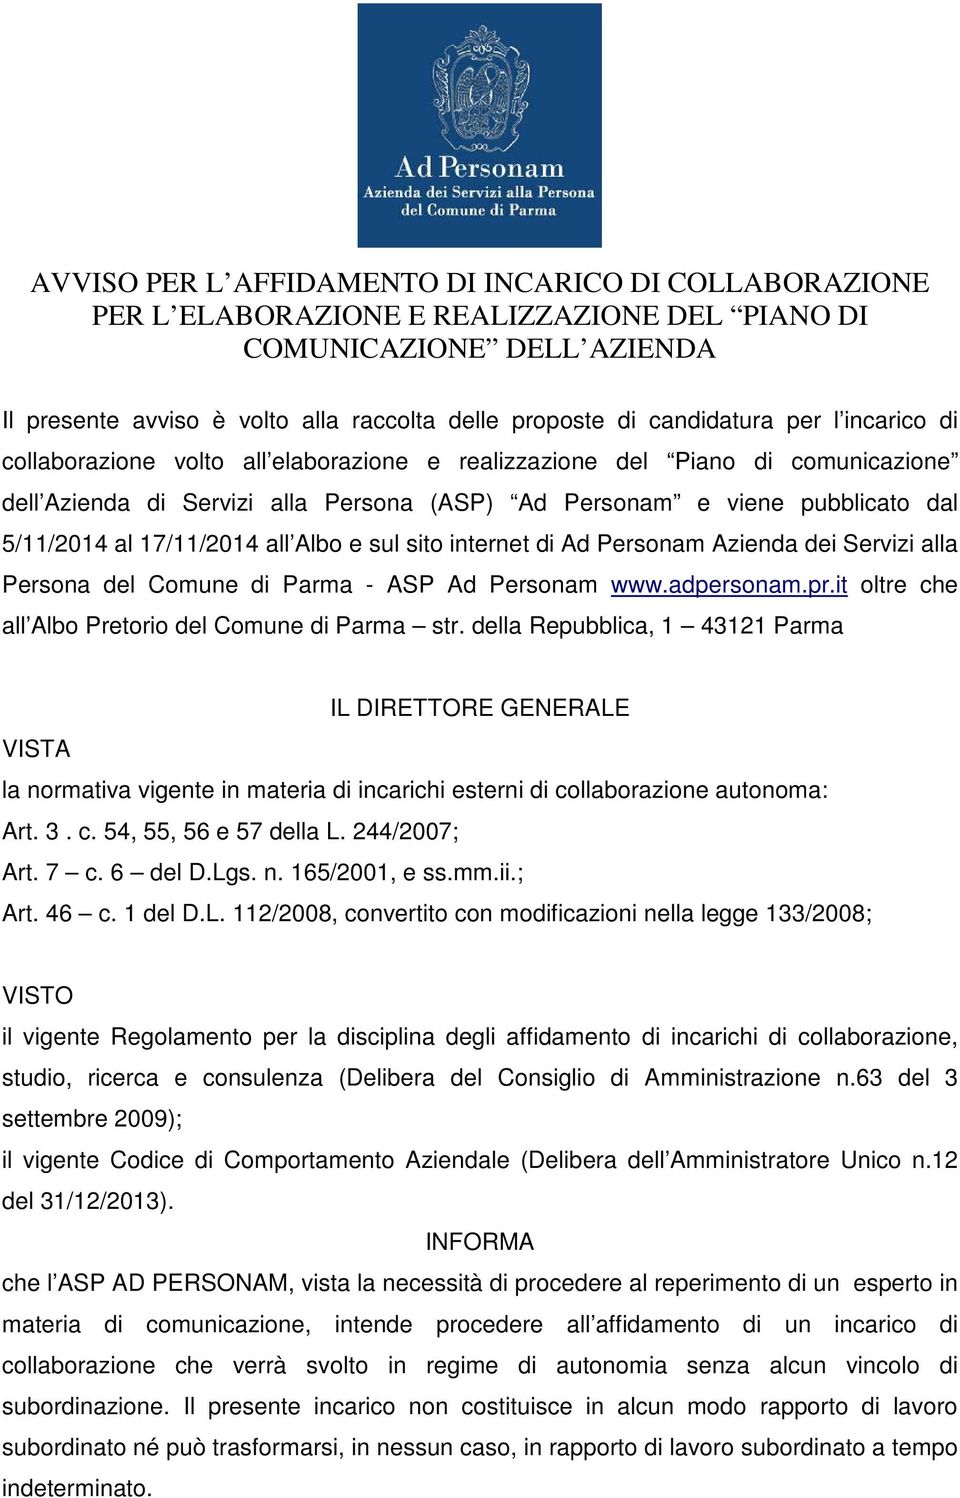 al 17/11/2014 all Albo e sul sito internet di Ad Personam Azienda dei Servizi alla Persona del Comune di Parma - ASP Ad Personam www.adpersonam.pr.